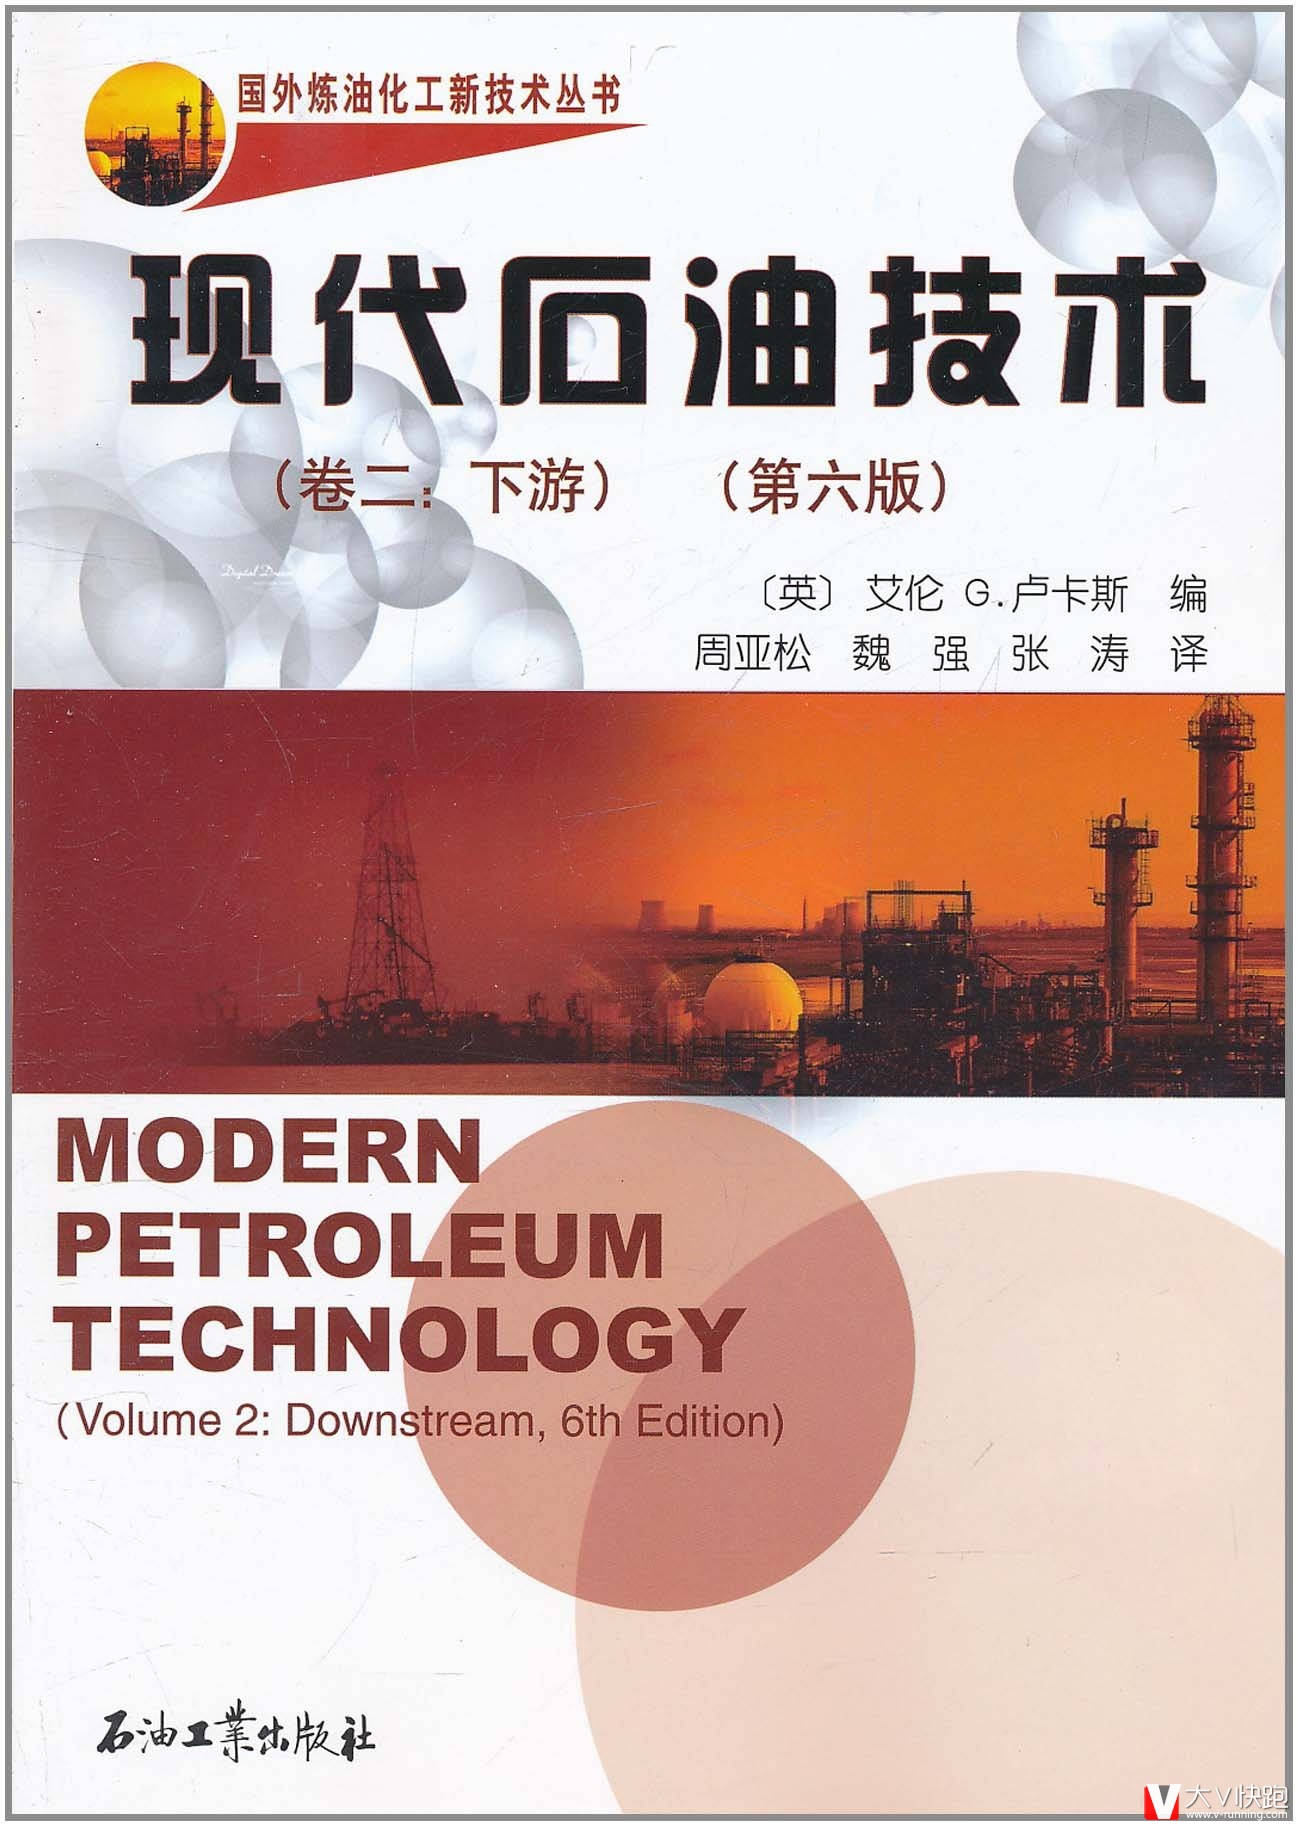 现代石油技术(卷二:下游)第六版艾伦G.卢卡斯(编者)